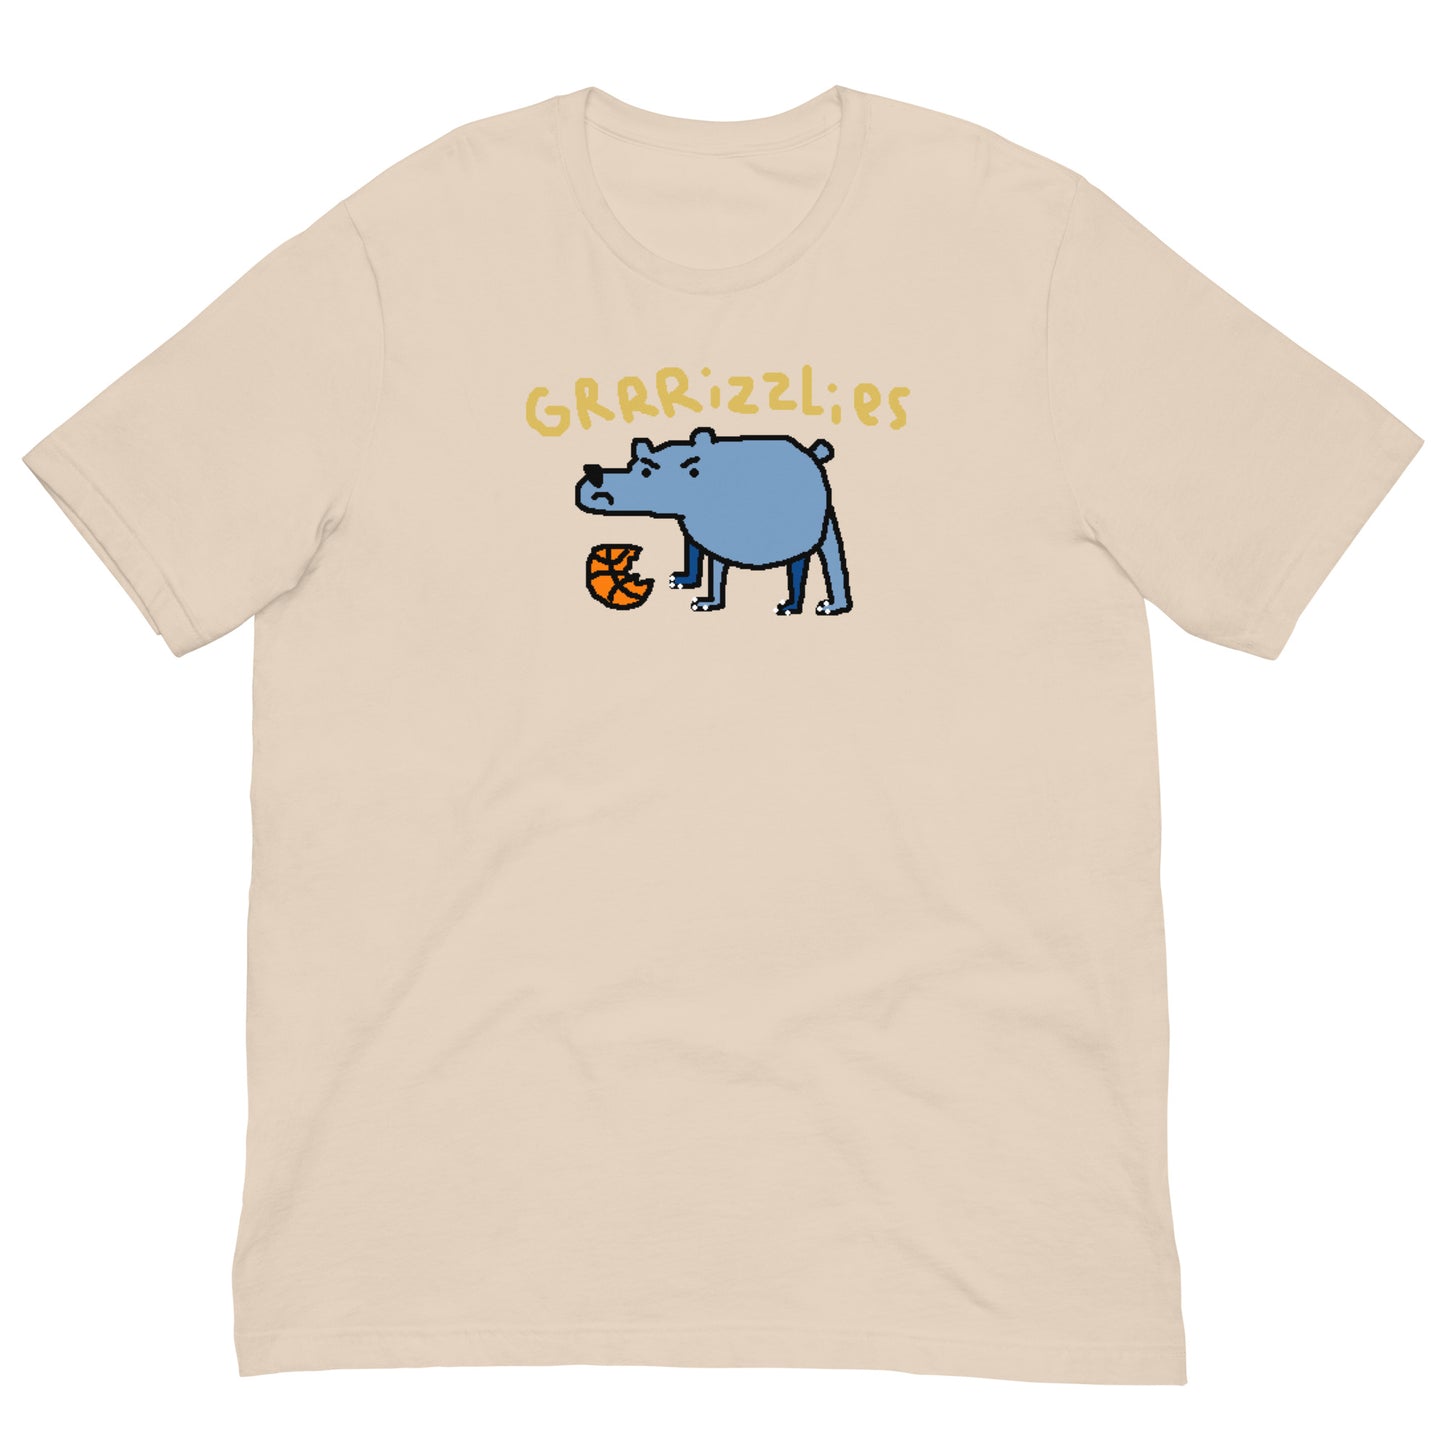 GRRRizzlies Shirt